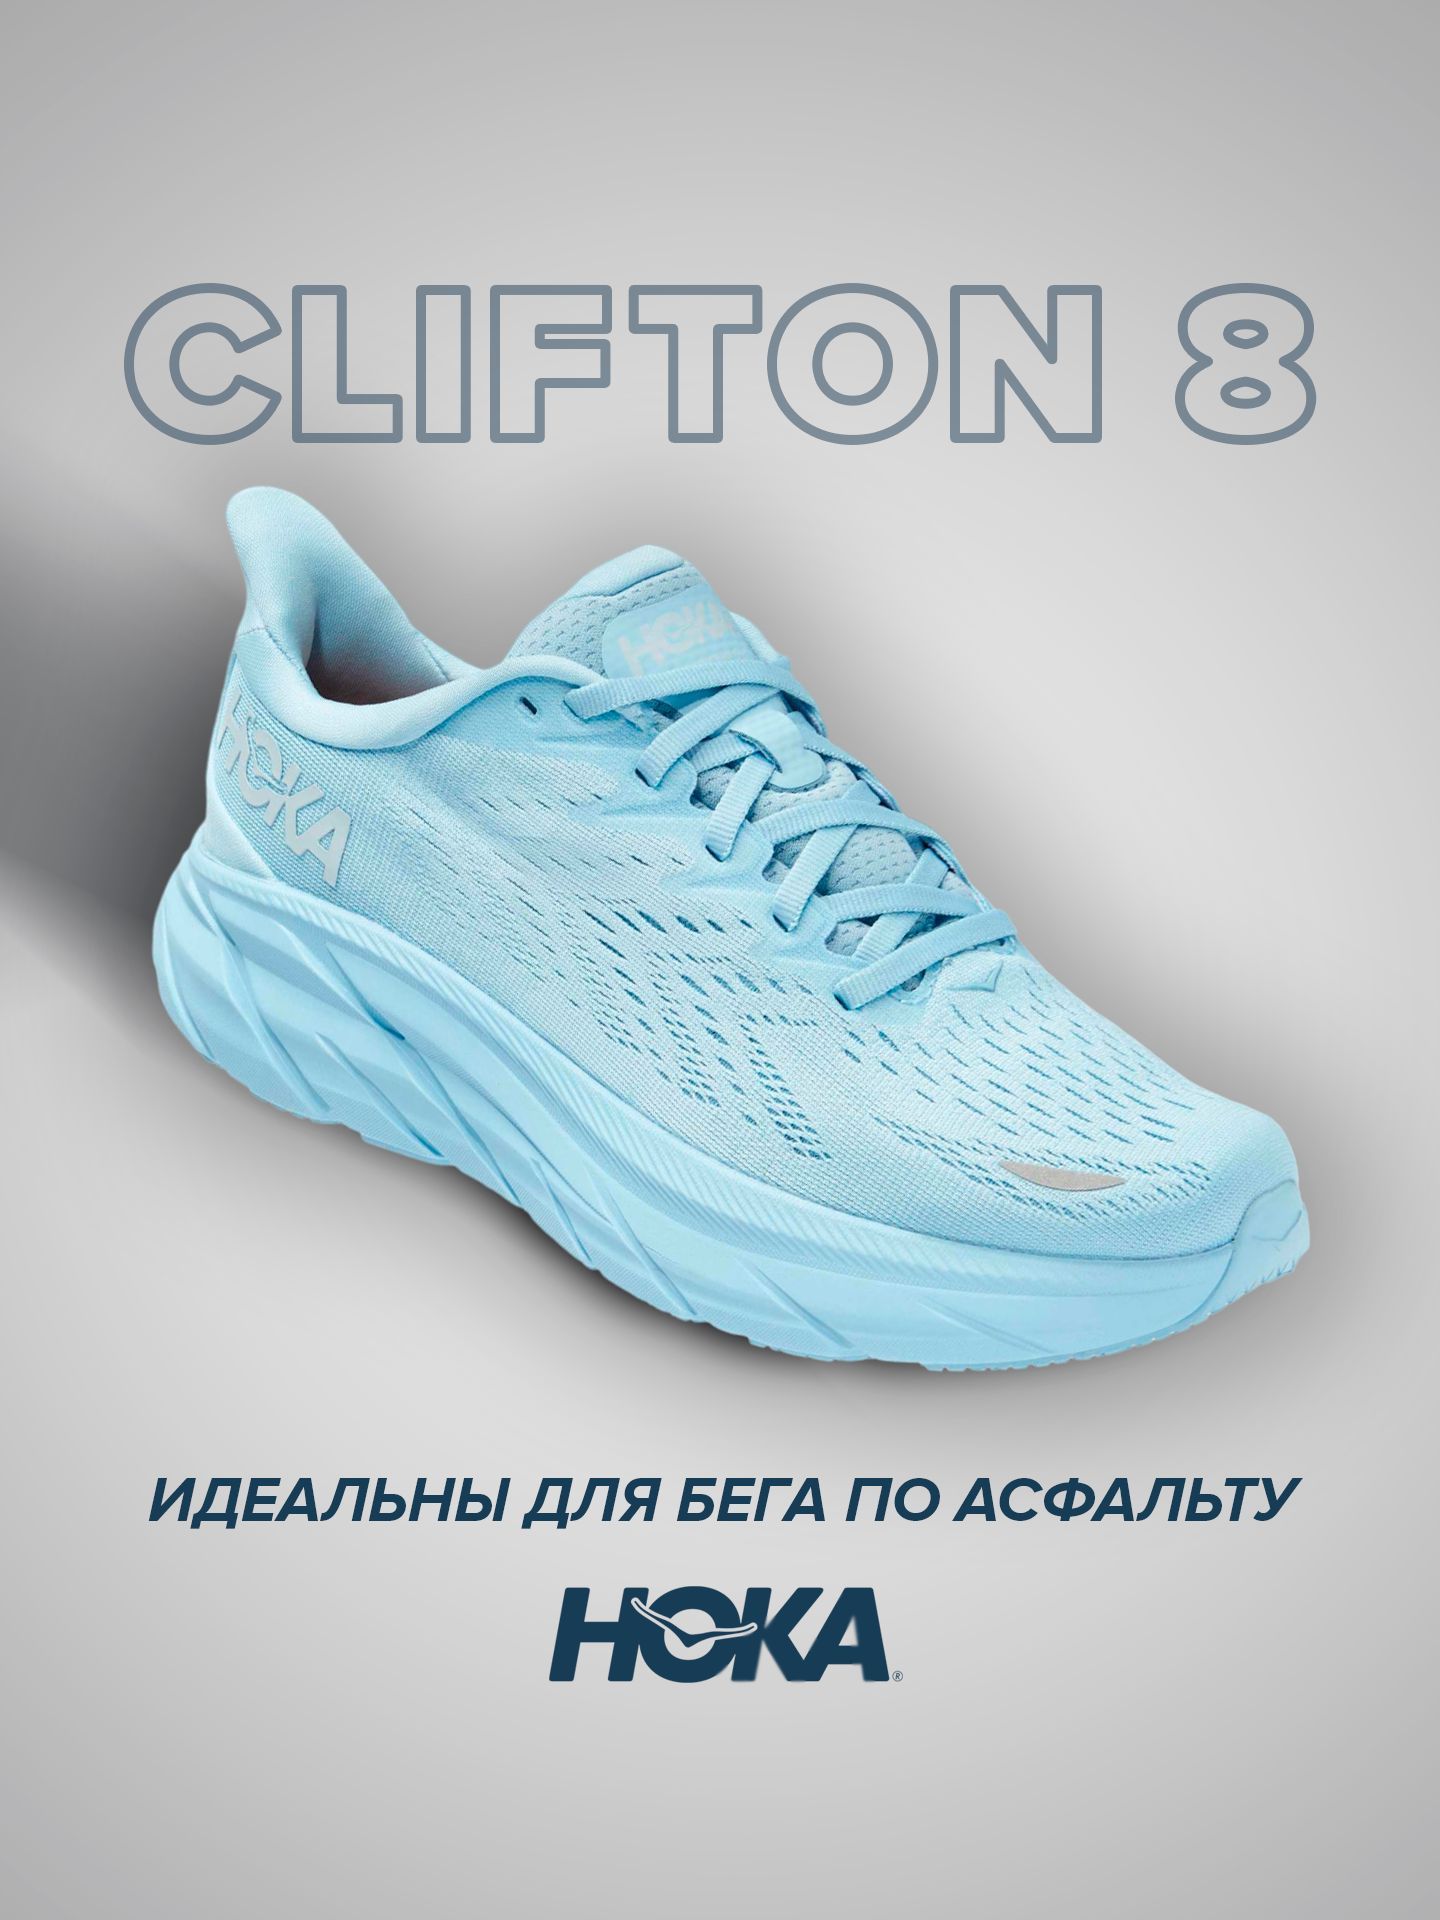 Спортивные кроссовки женские Hoka Clifton 8 голубые 7 US